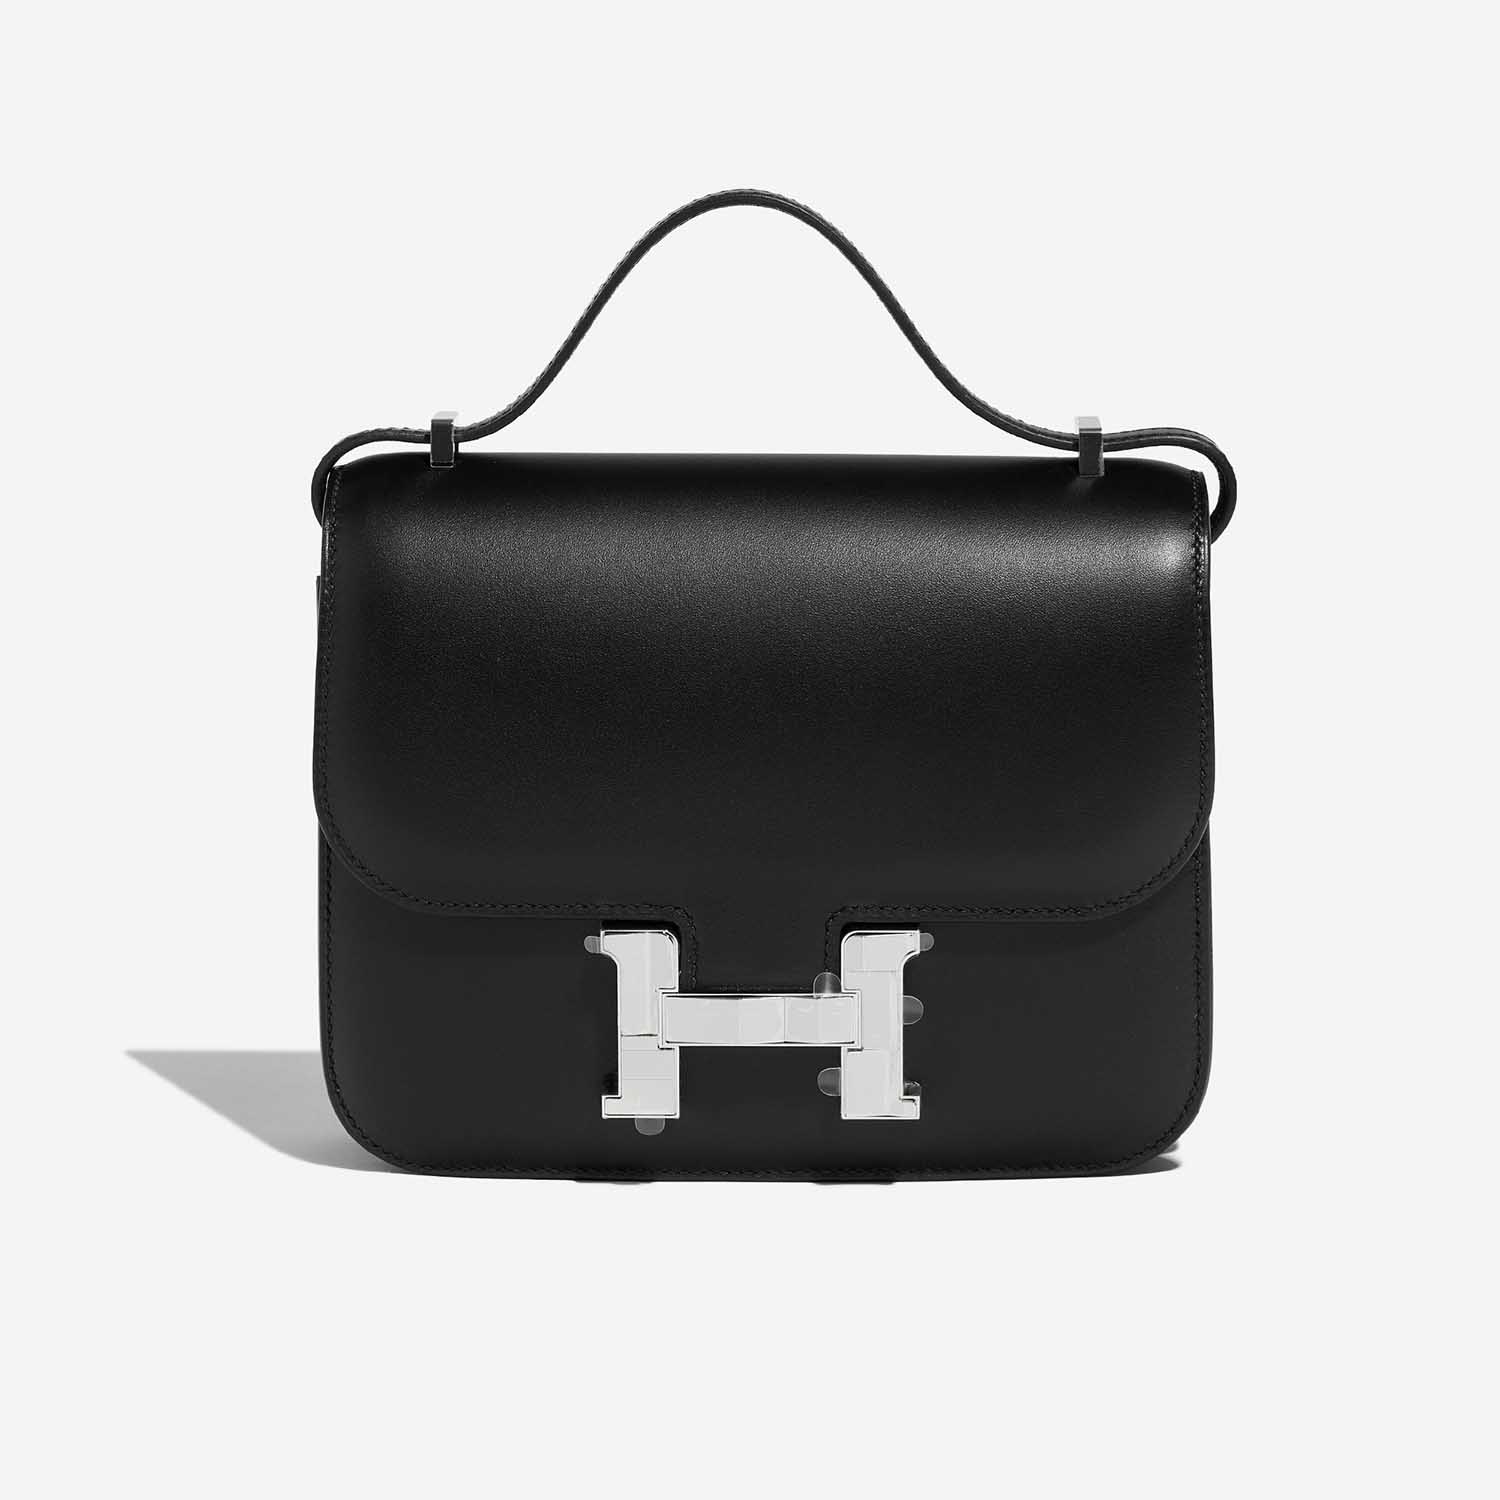 Hermès Constance 18 Black Front | Verkaufen Sie Ihre Designer-Tasche auf Saclab.com